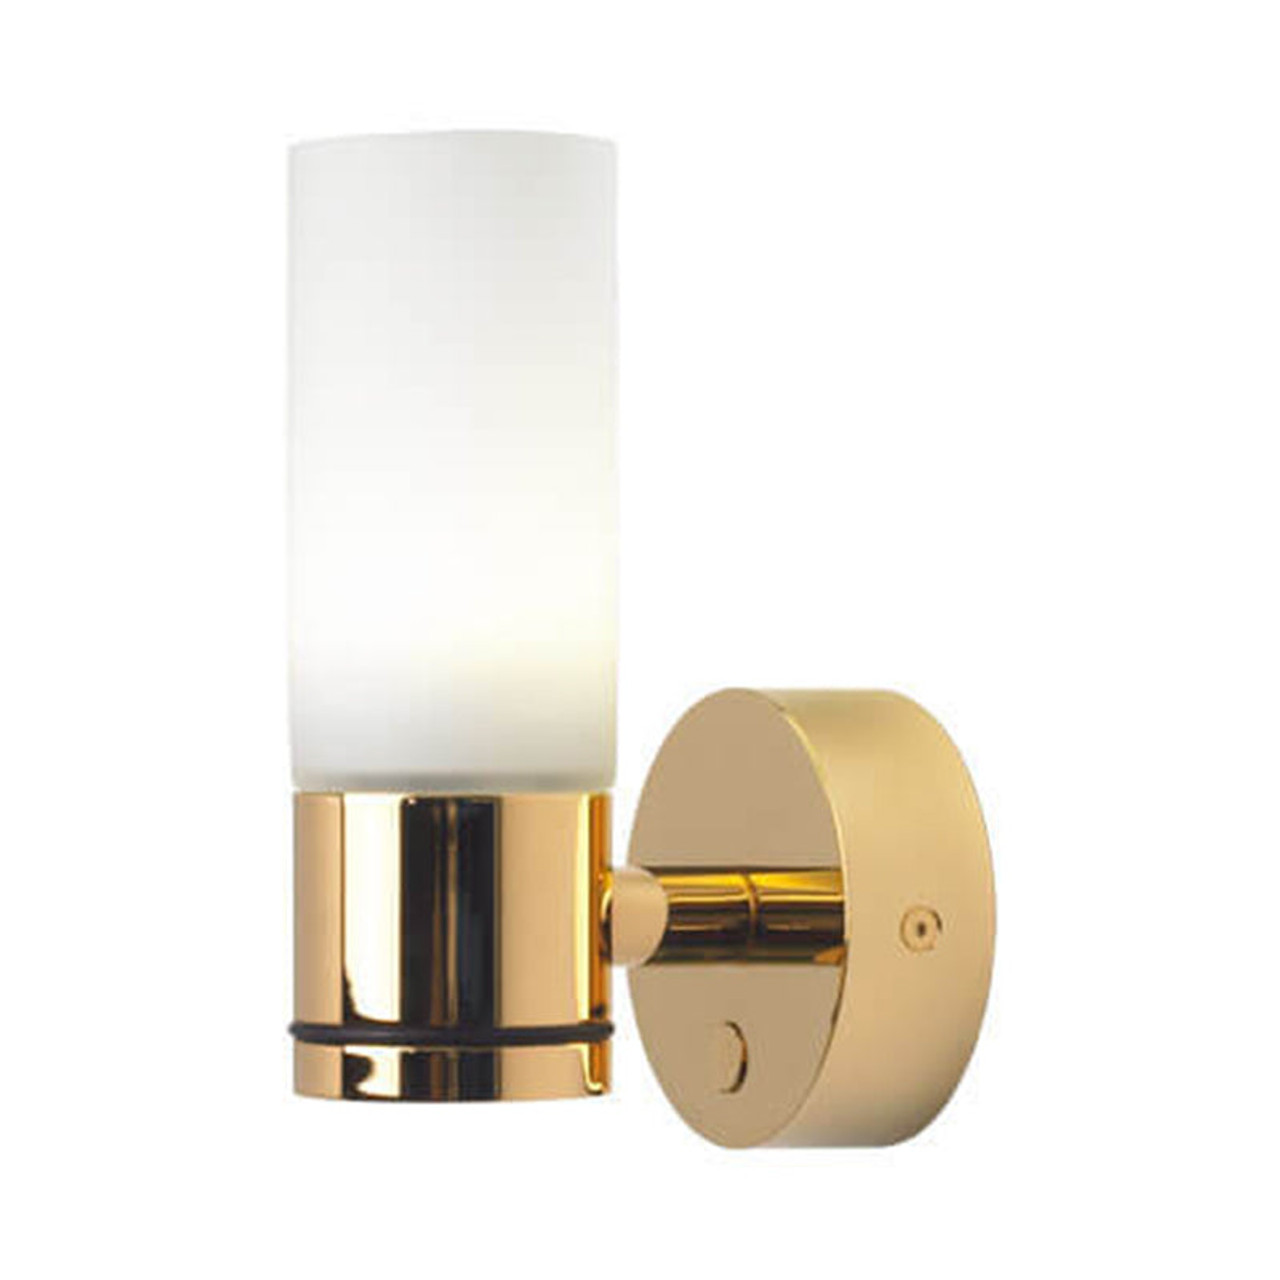 Prebit - Sylt Wall Light - Gold, White Glass, Warm White, 3000K (ILPB21112009) - Apollo Lighting